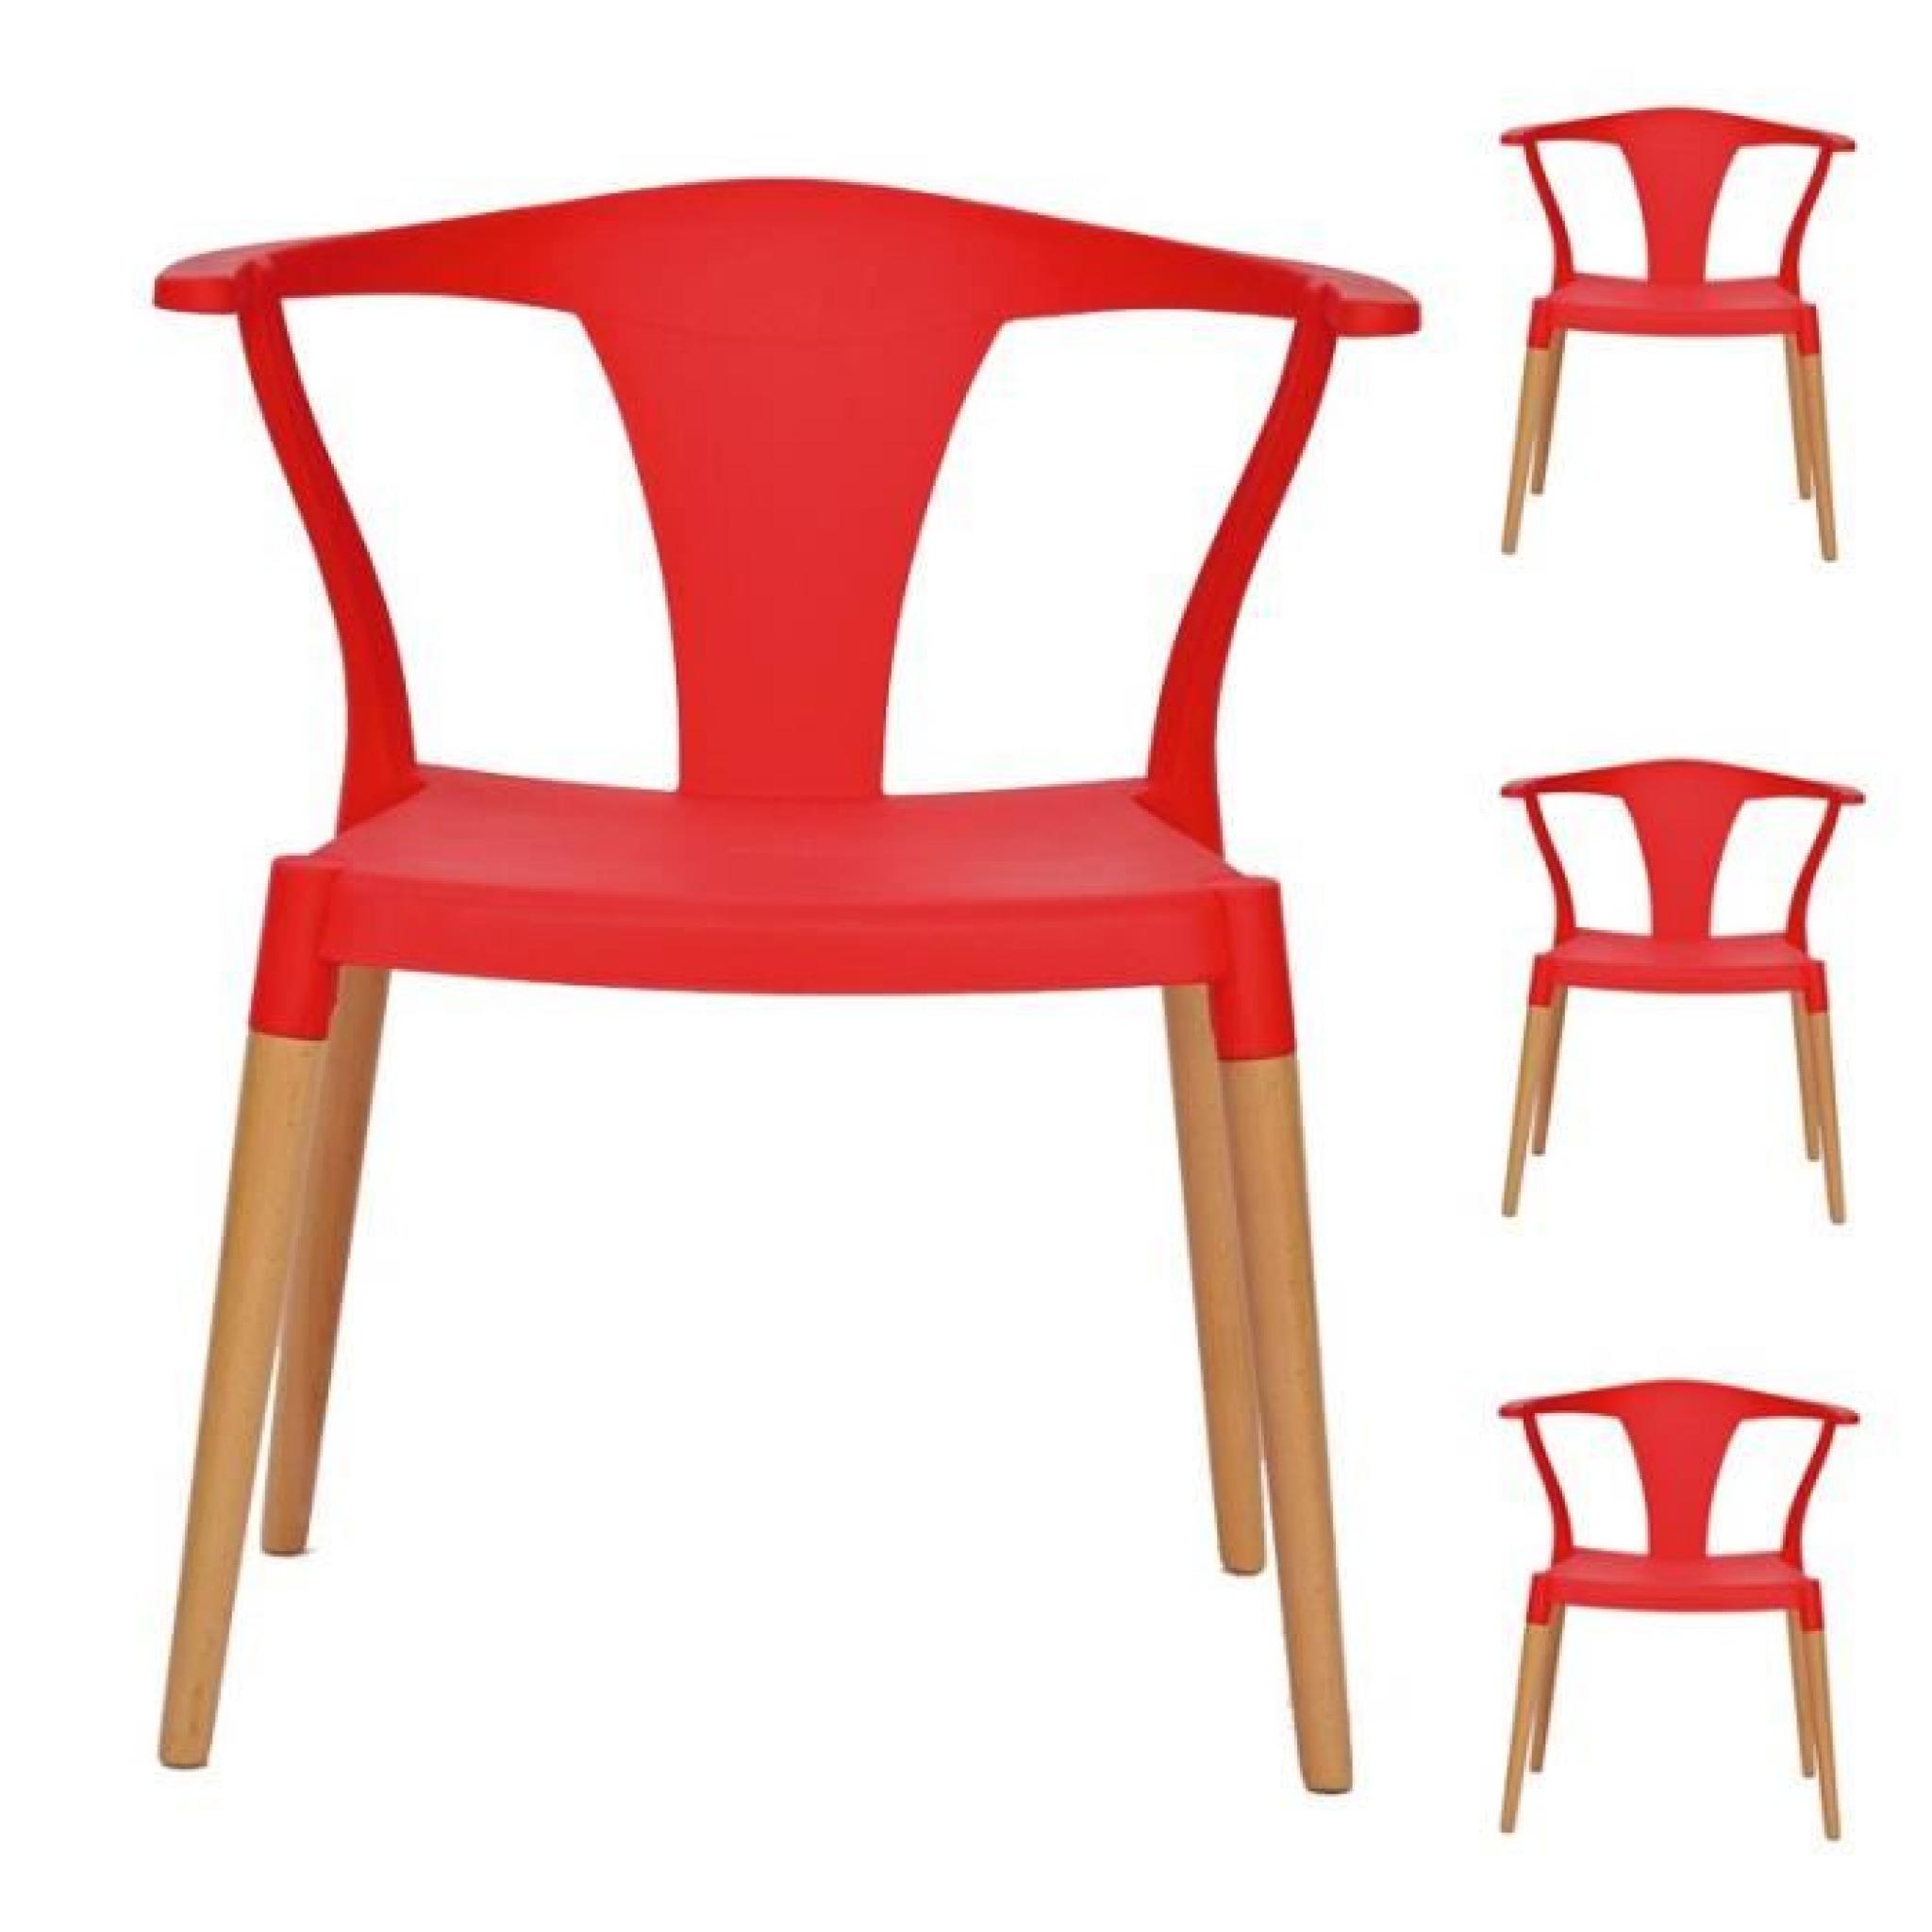 Quatuor de chaises Rouge - TARB - L 56 x l 44 x H 75 cm